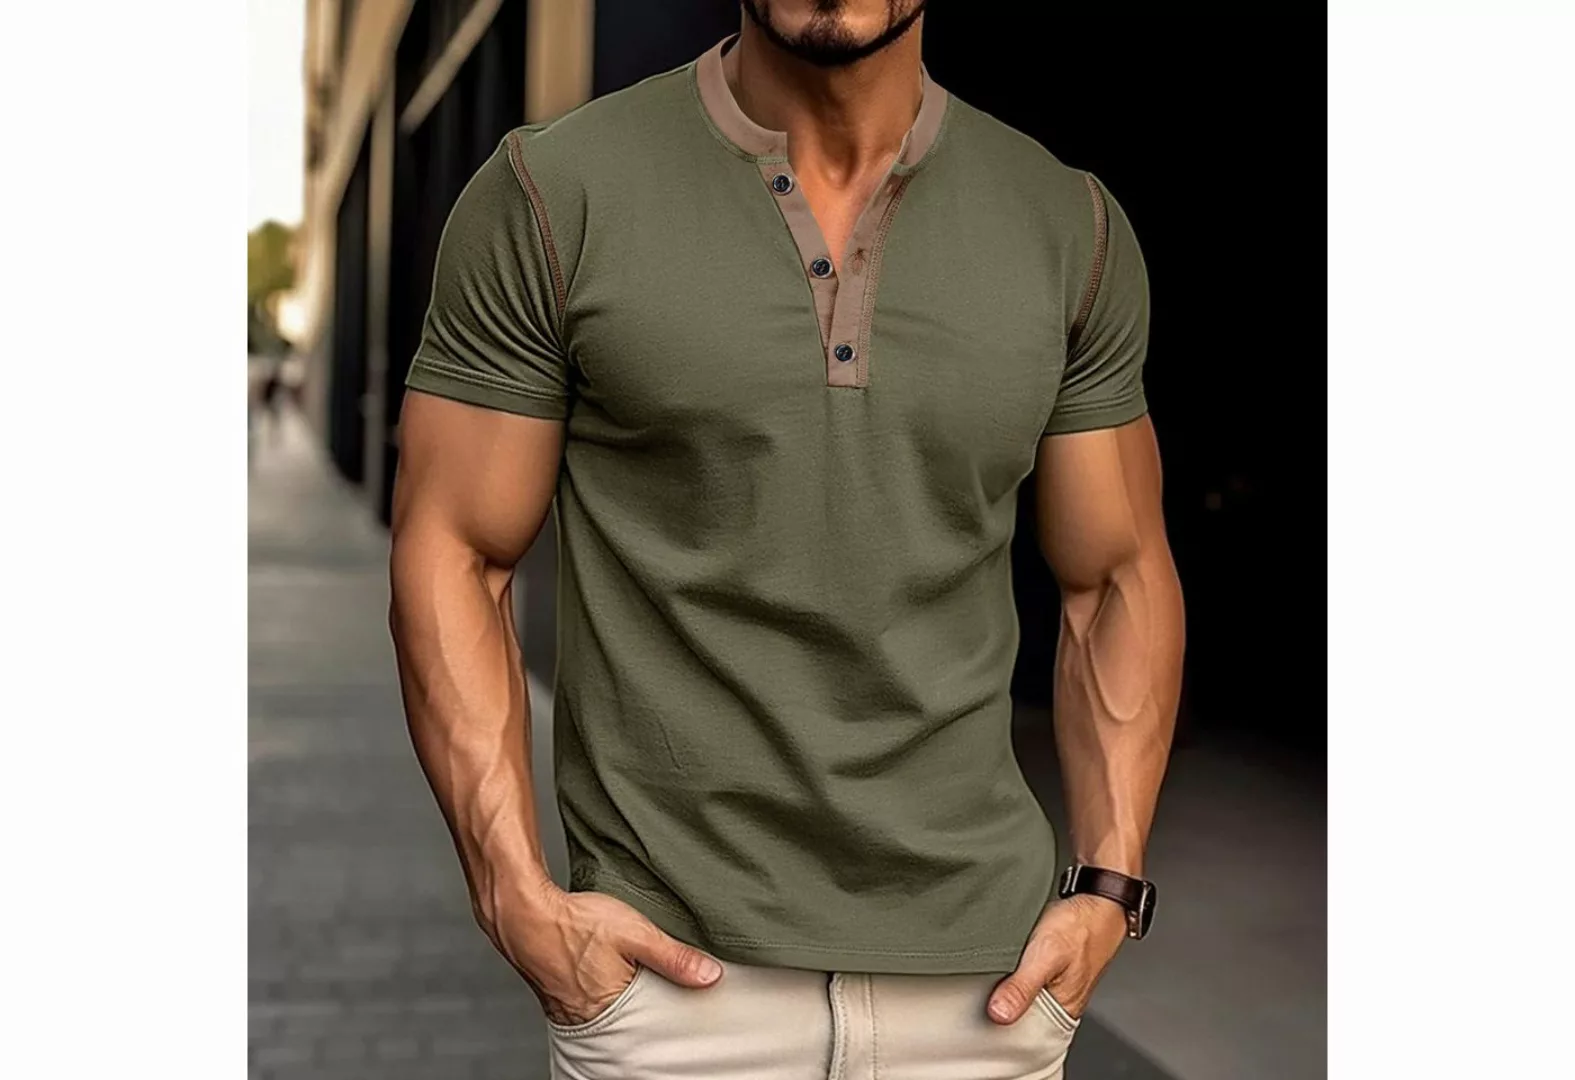 KIKI T-Shirt Einfarbiges Kurzarm-T-Shirt für Herren-Henley Shirt -strandshi günstig online kaufen